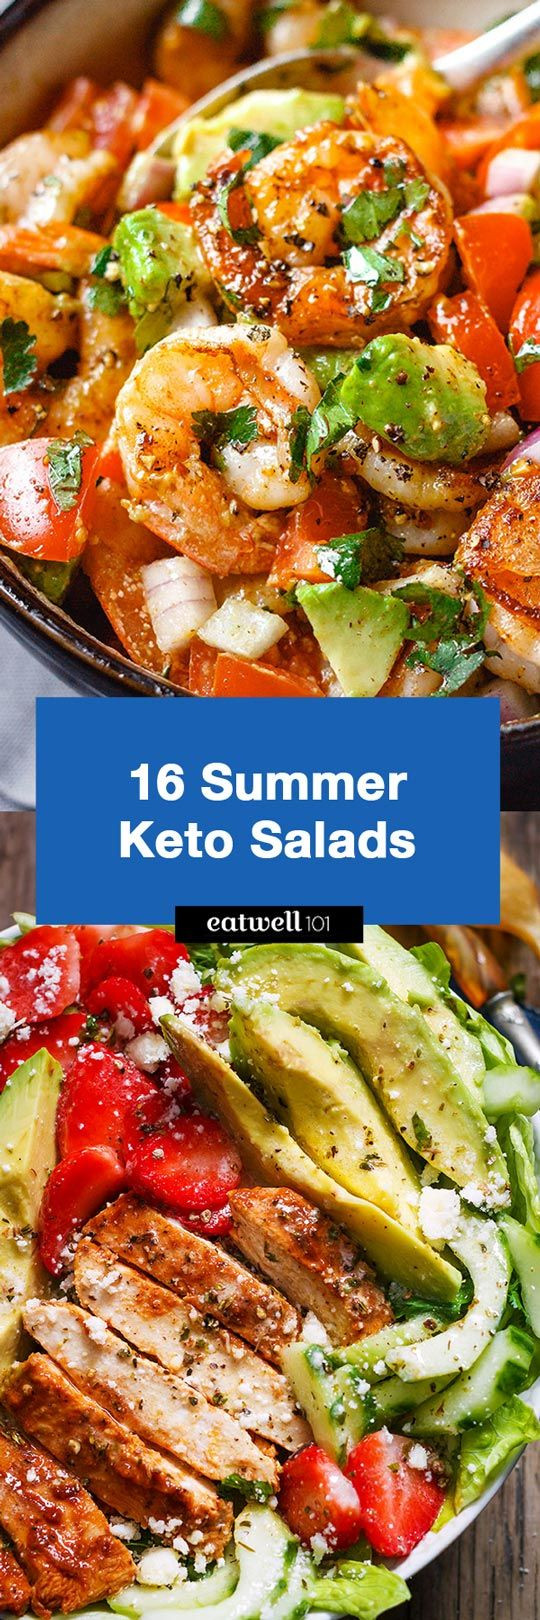 Summer Keto Meal Ideas 16 Best Summer Keto Salad Recipes